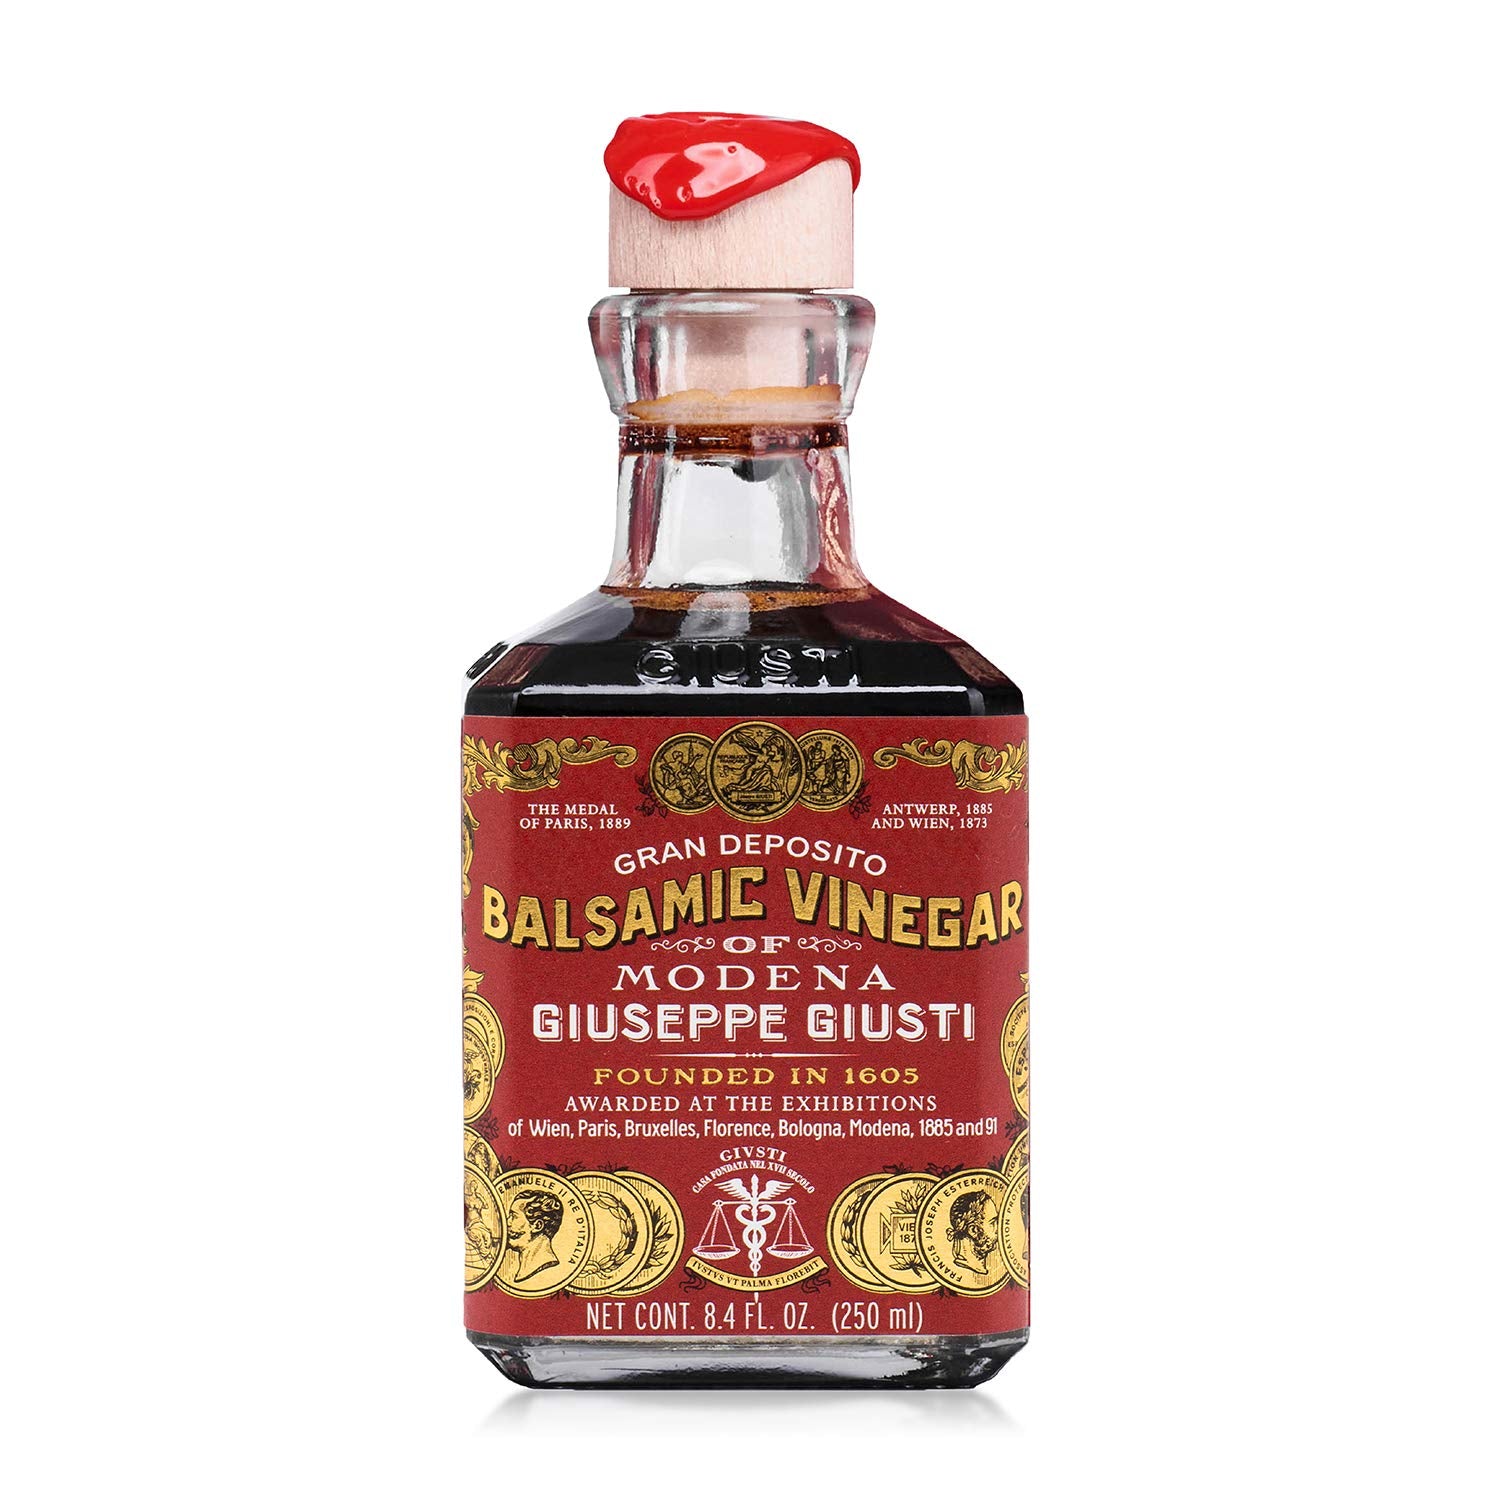 giuseppe giusti balsamic vinegar